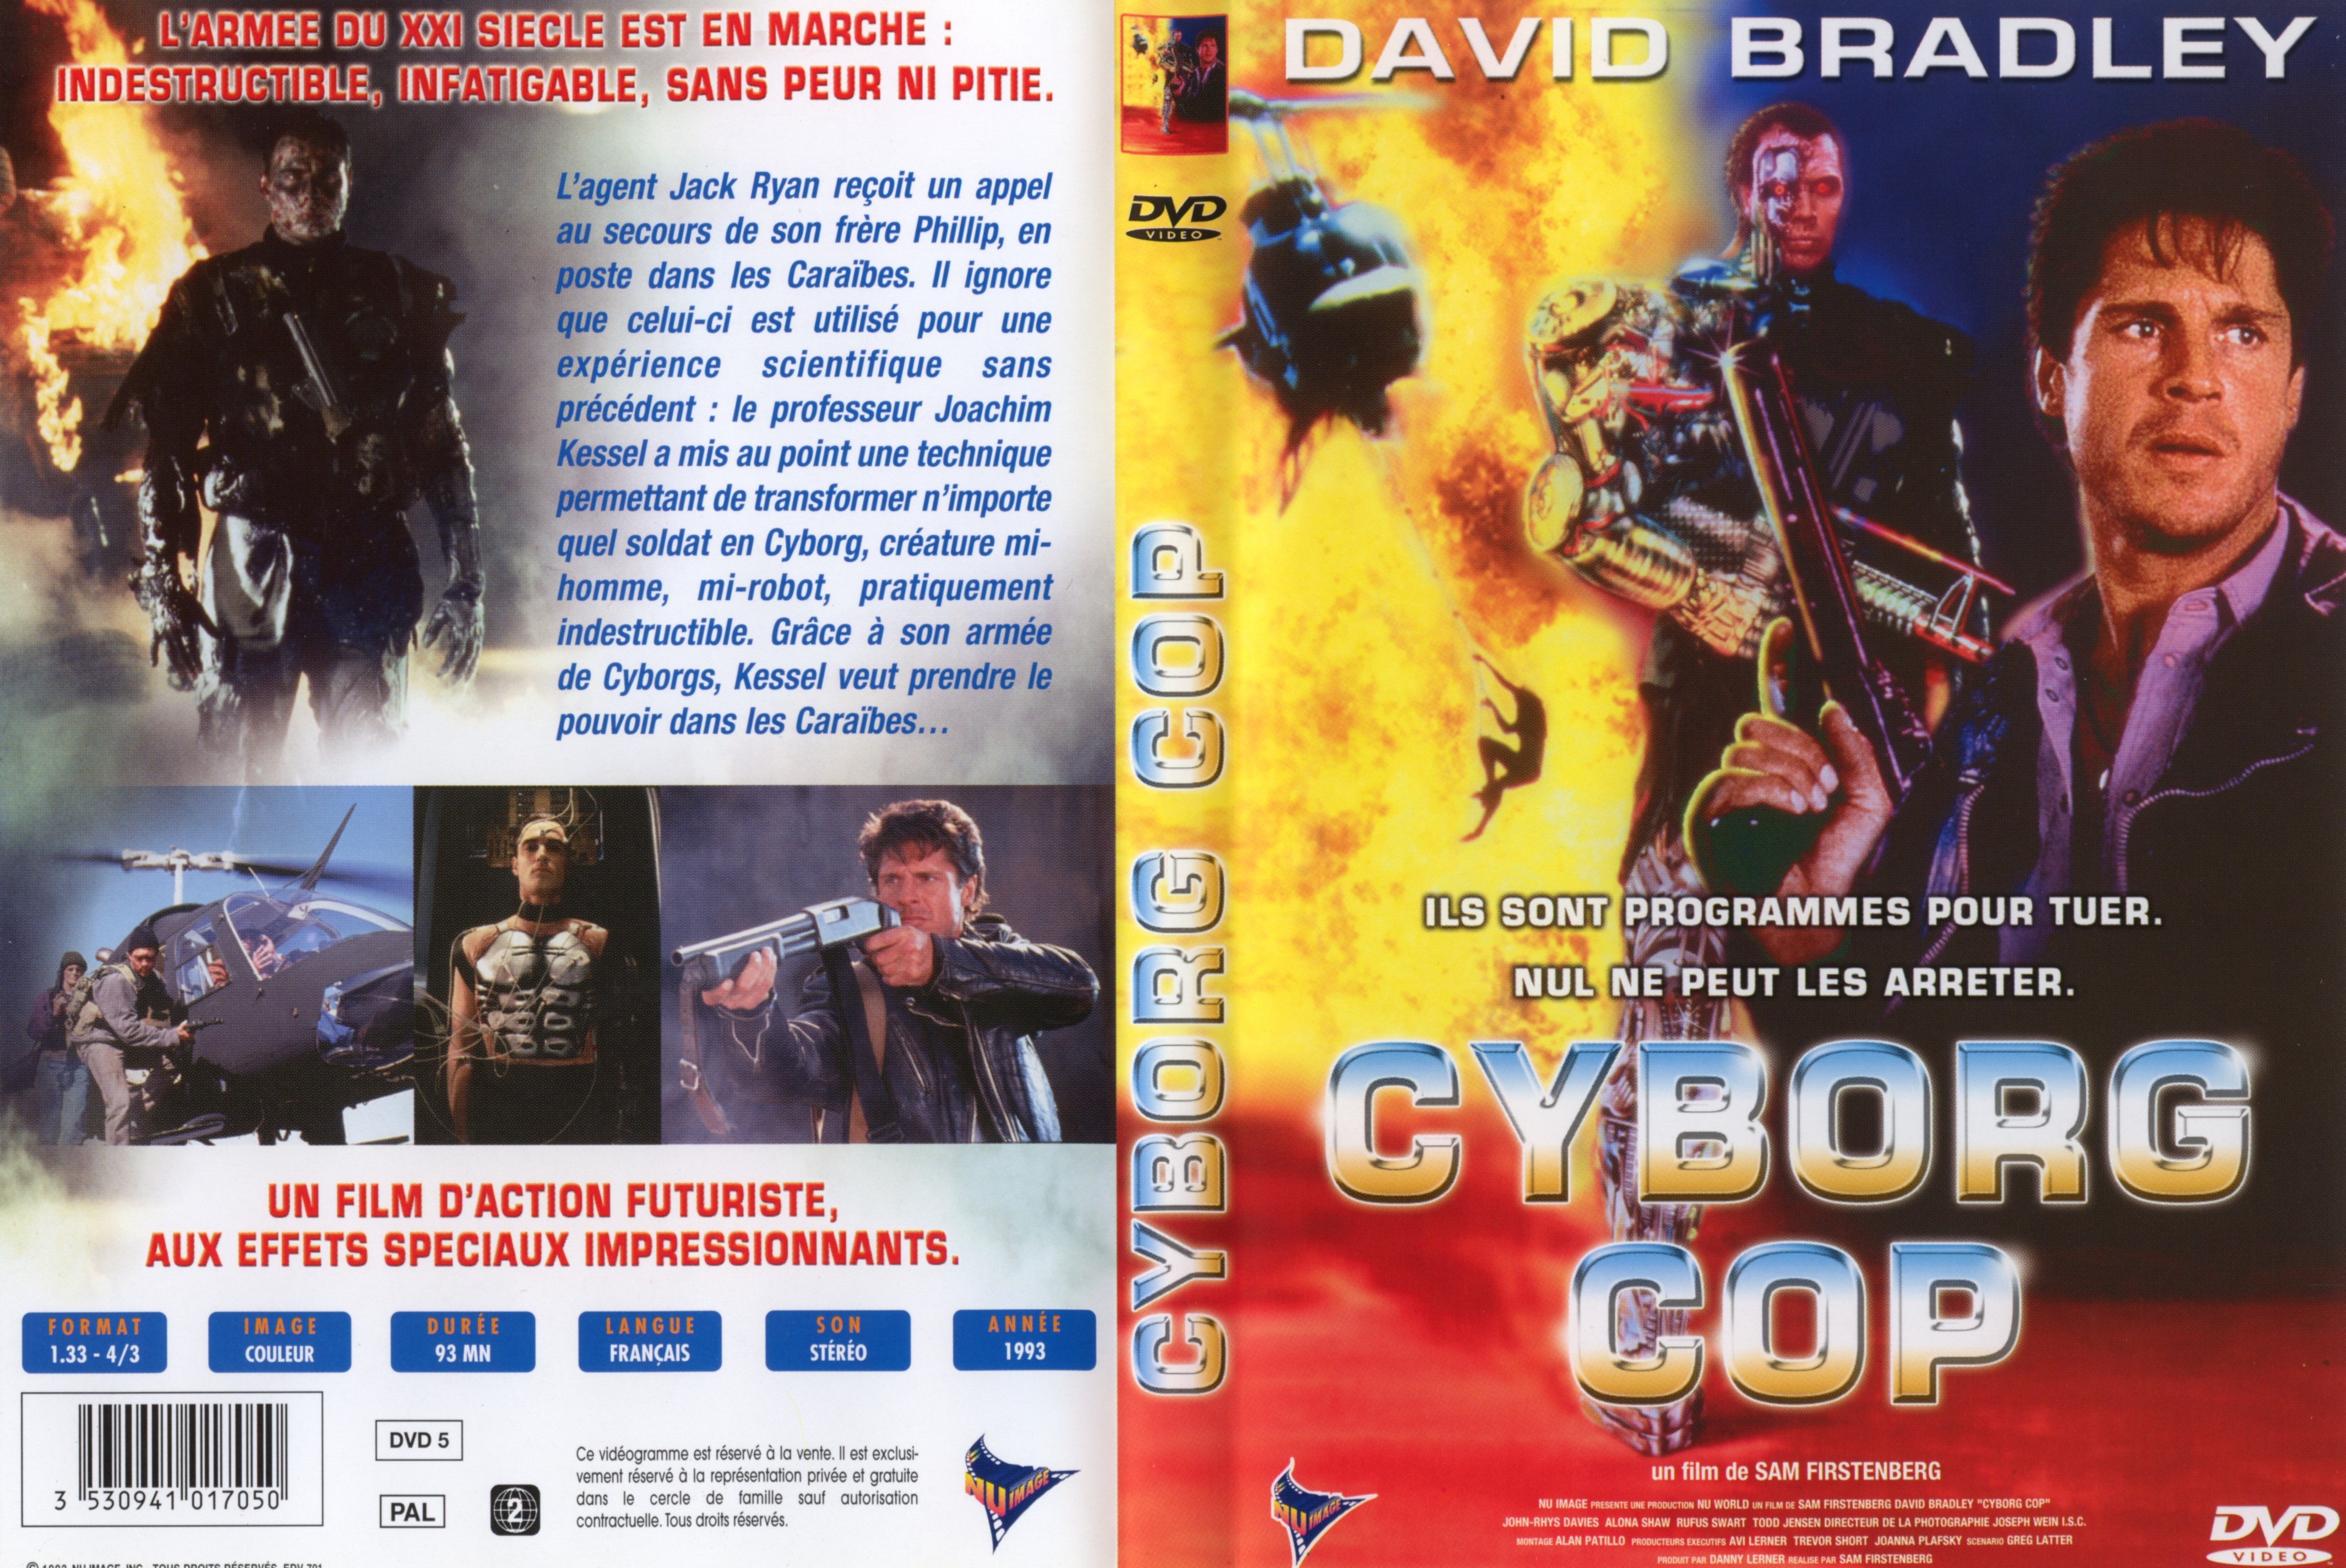 Jaquette DVD Cyborg cop